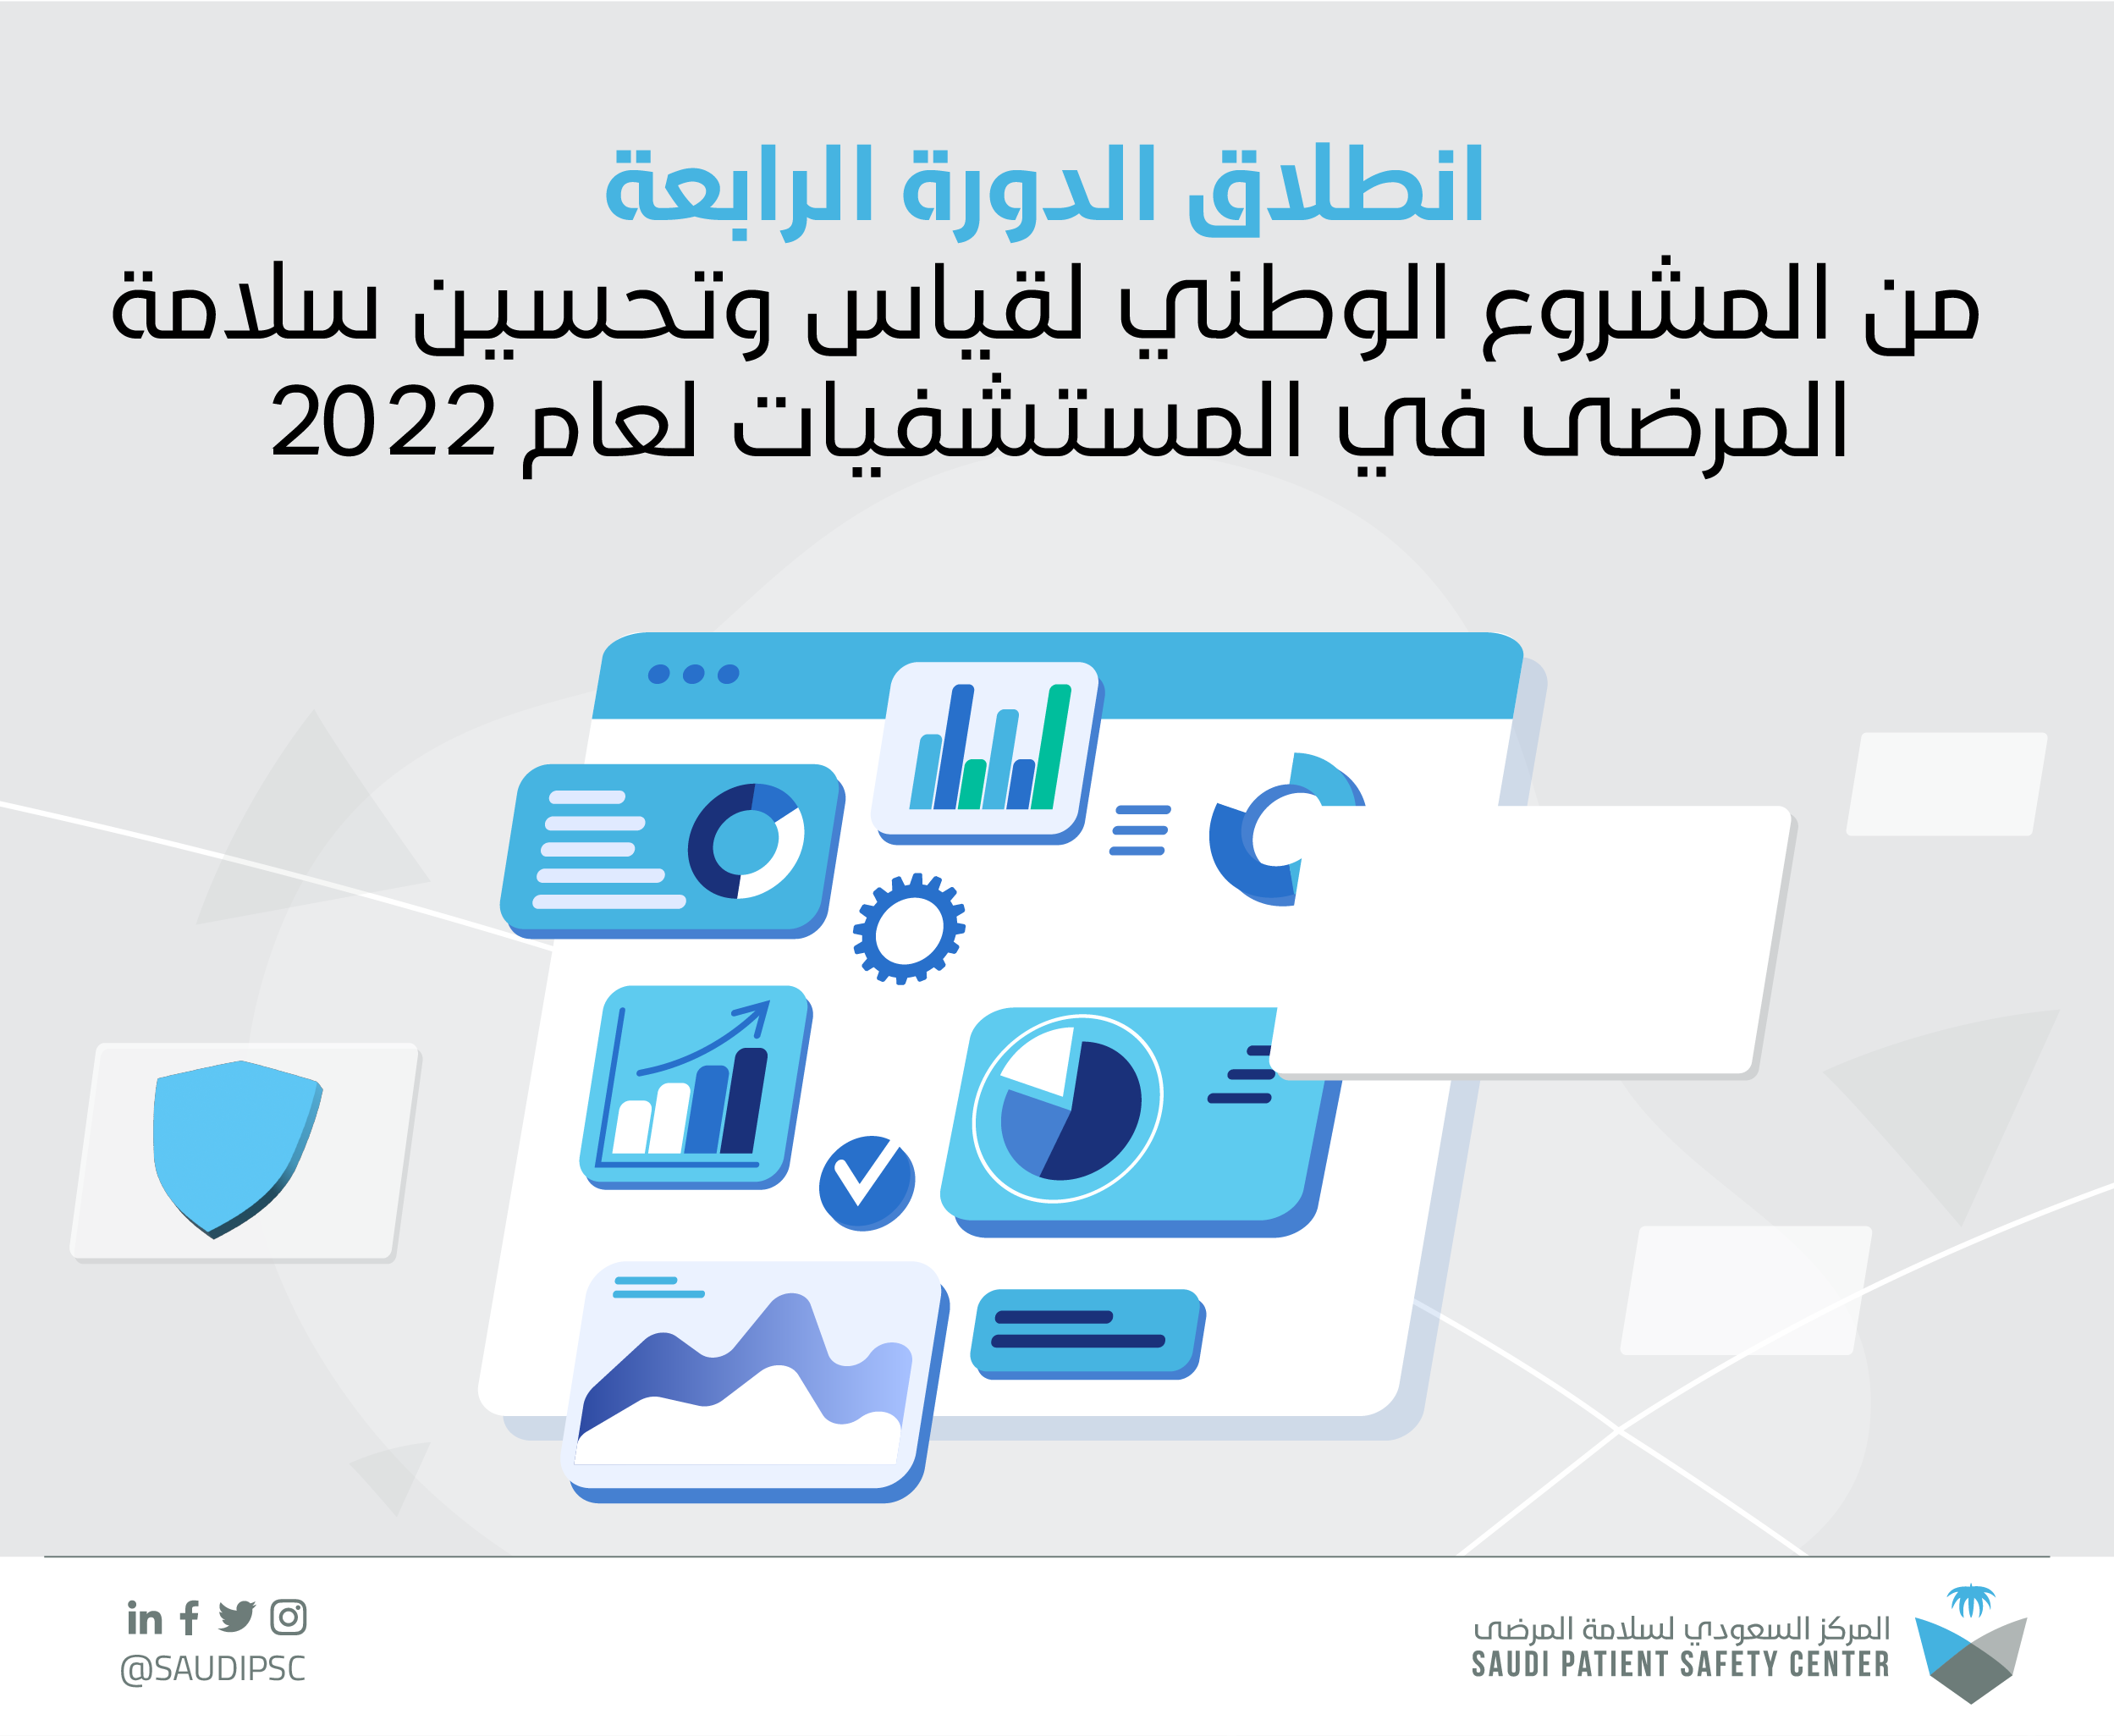 المشروع الوطني لقياس وتحسين ثقافة سلامة المرضى في مستشفيات المملكة العربية السعودية